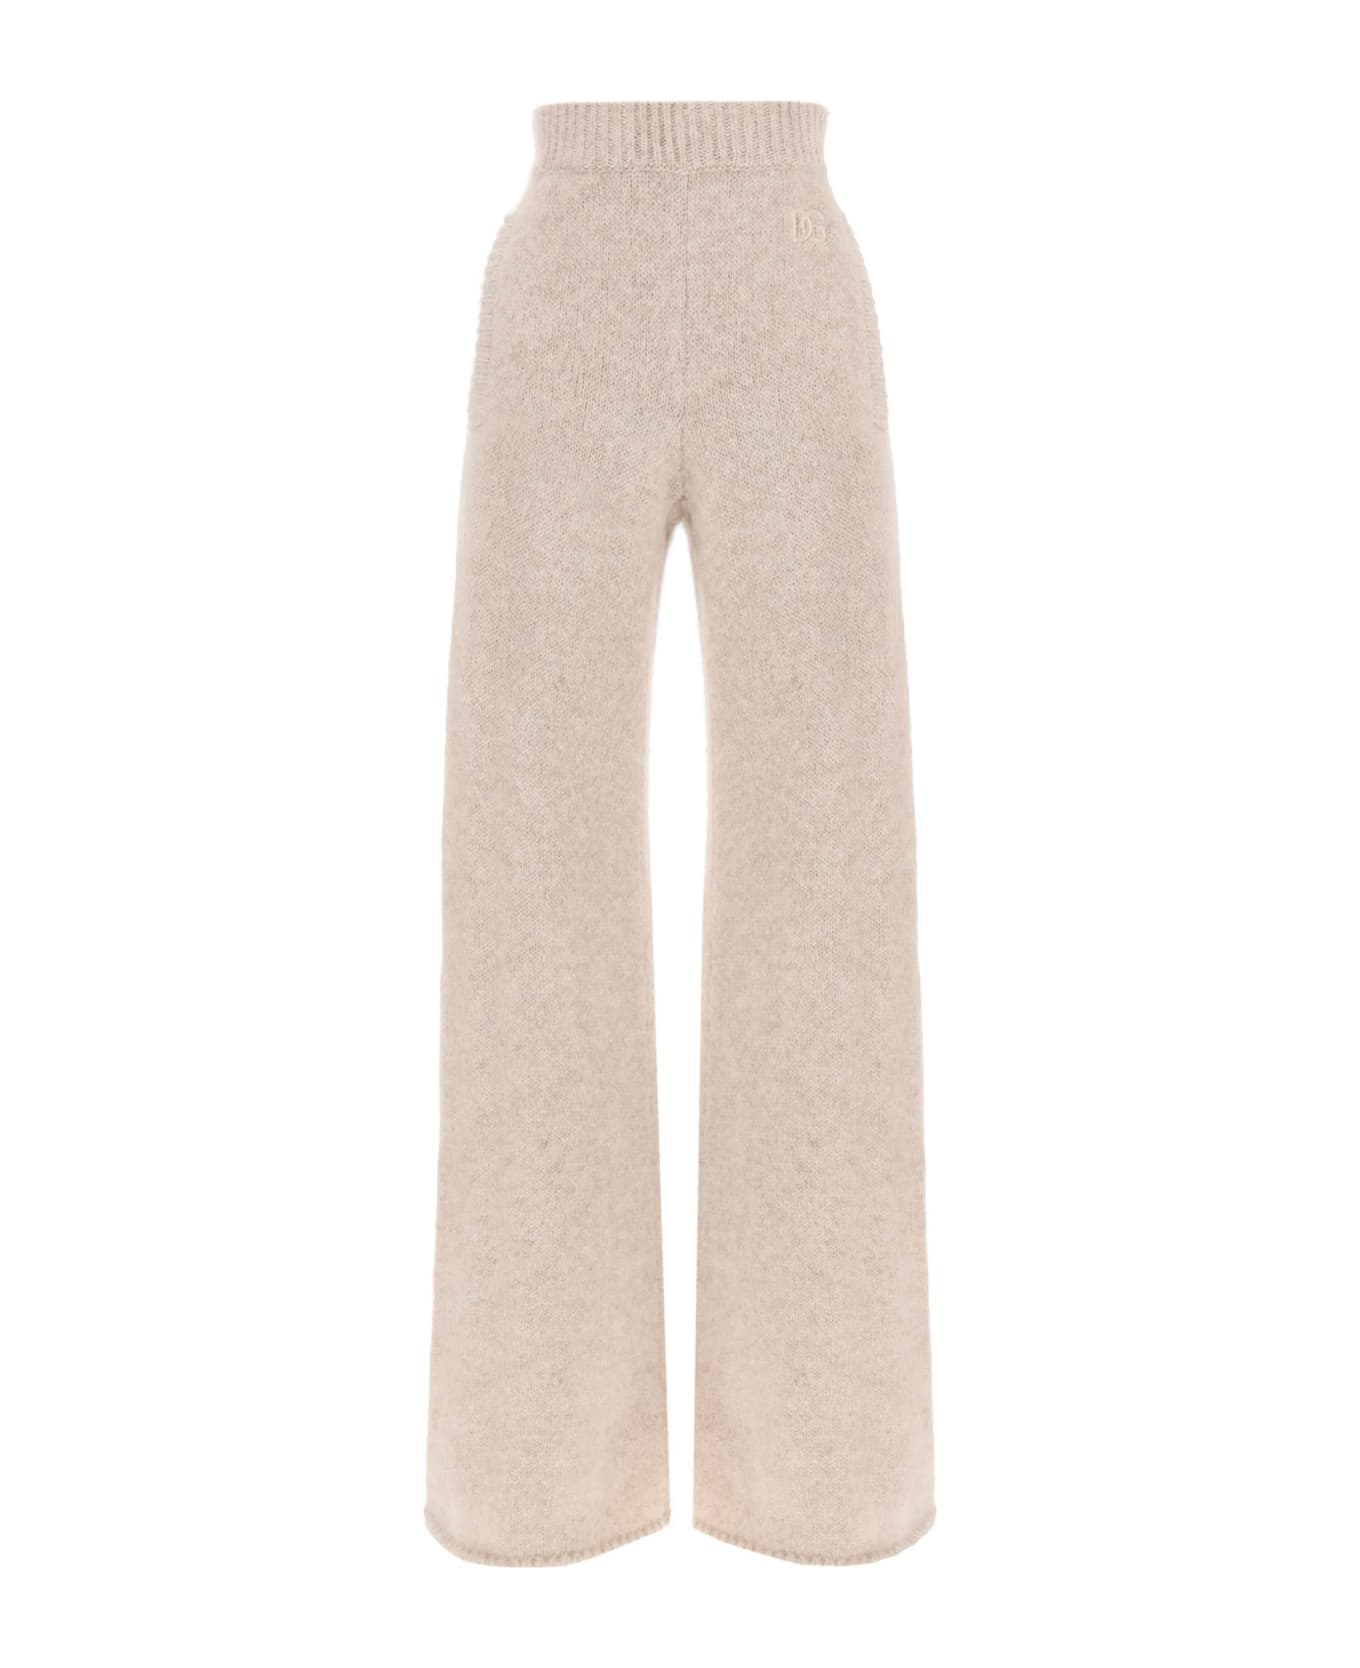 Dolce & Gabbana Llama Knit Flared Pants - CORDA SCURO (Beige)